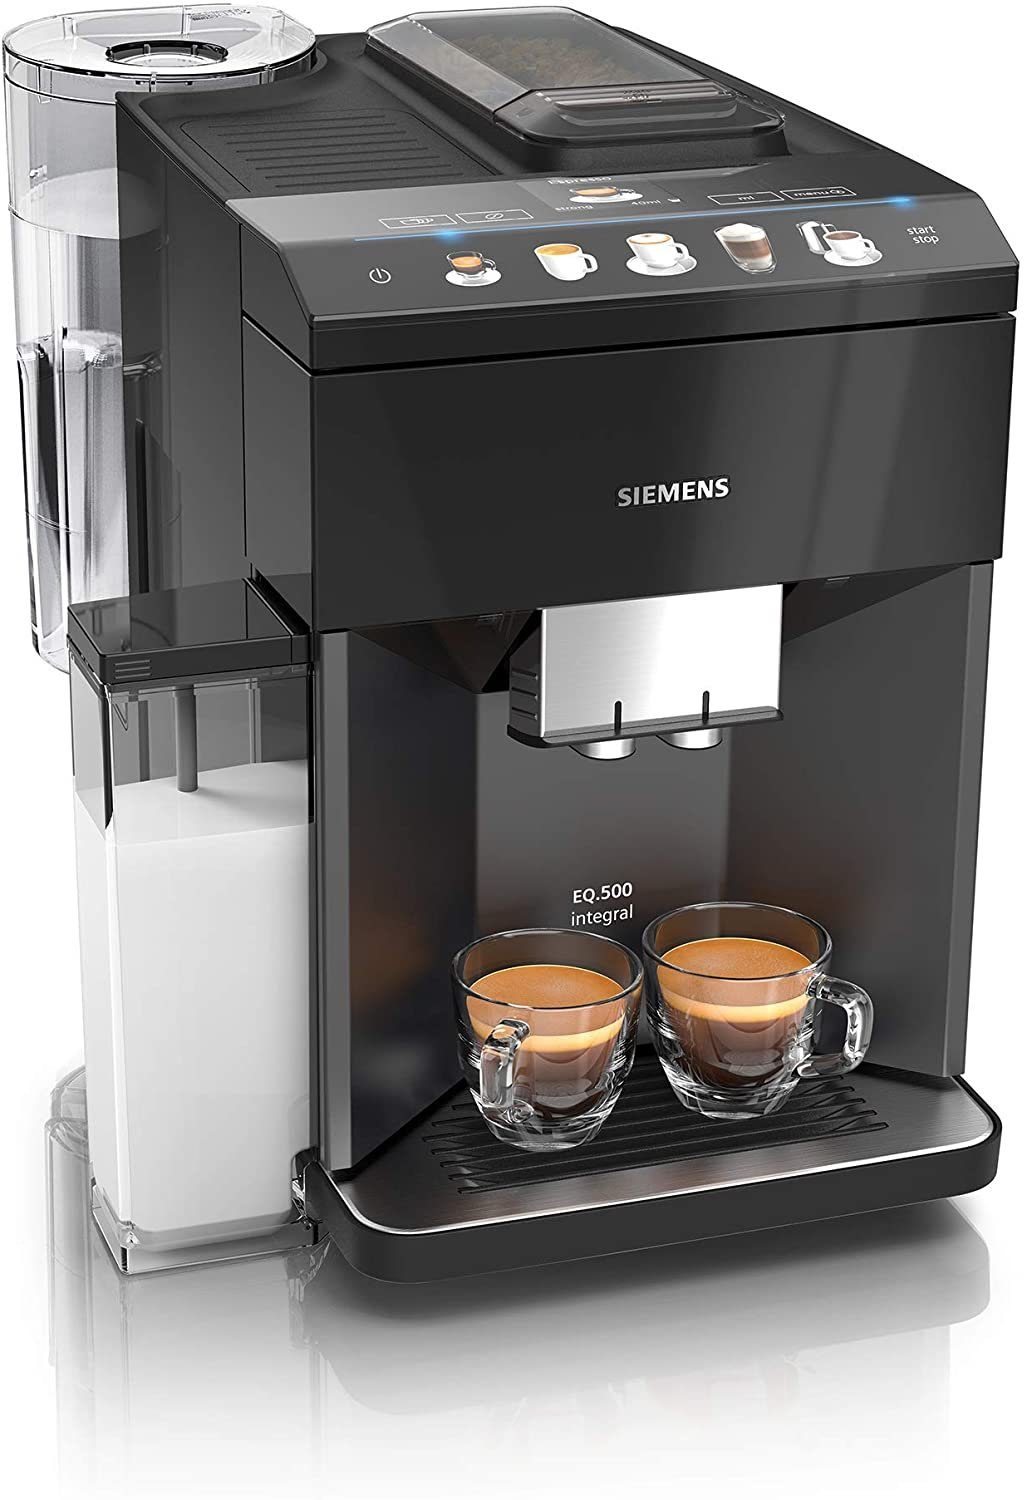 SIEMENS Kaffeevollautomat EQ.500 integral TQ505DF8